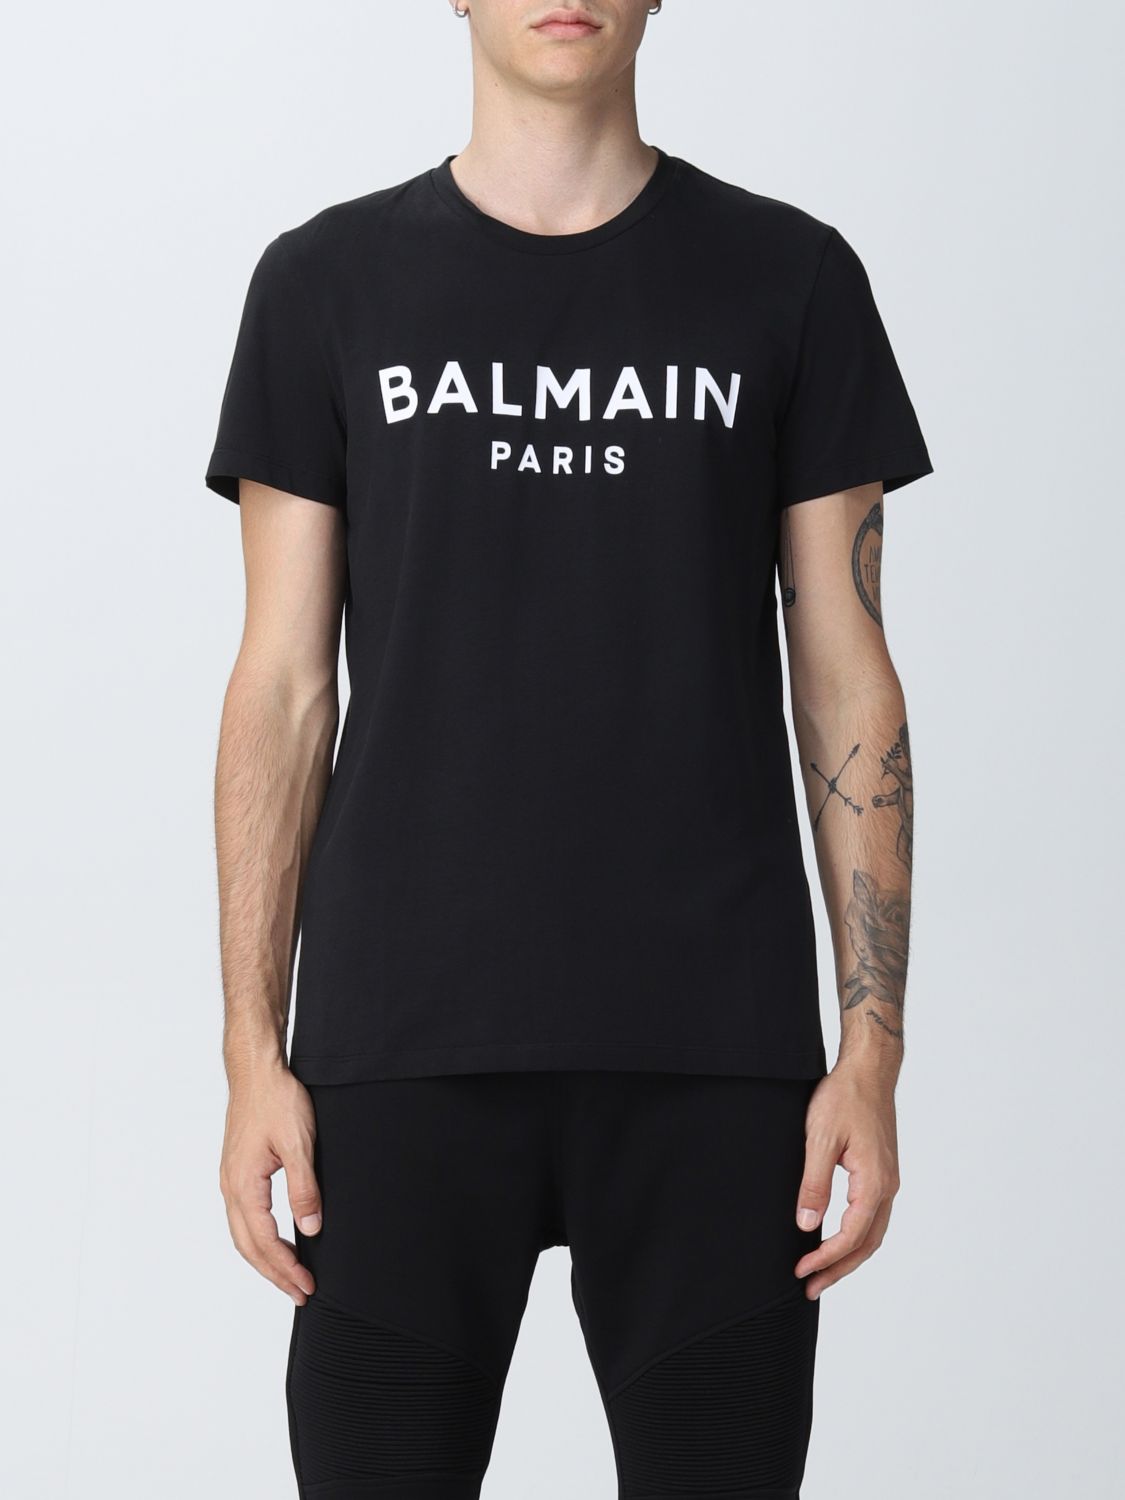 【ホワイト】 BALMAIN Paris Tシャツ フランス